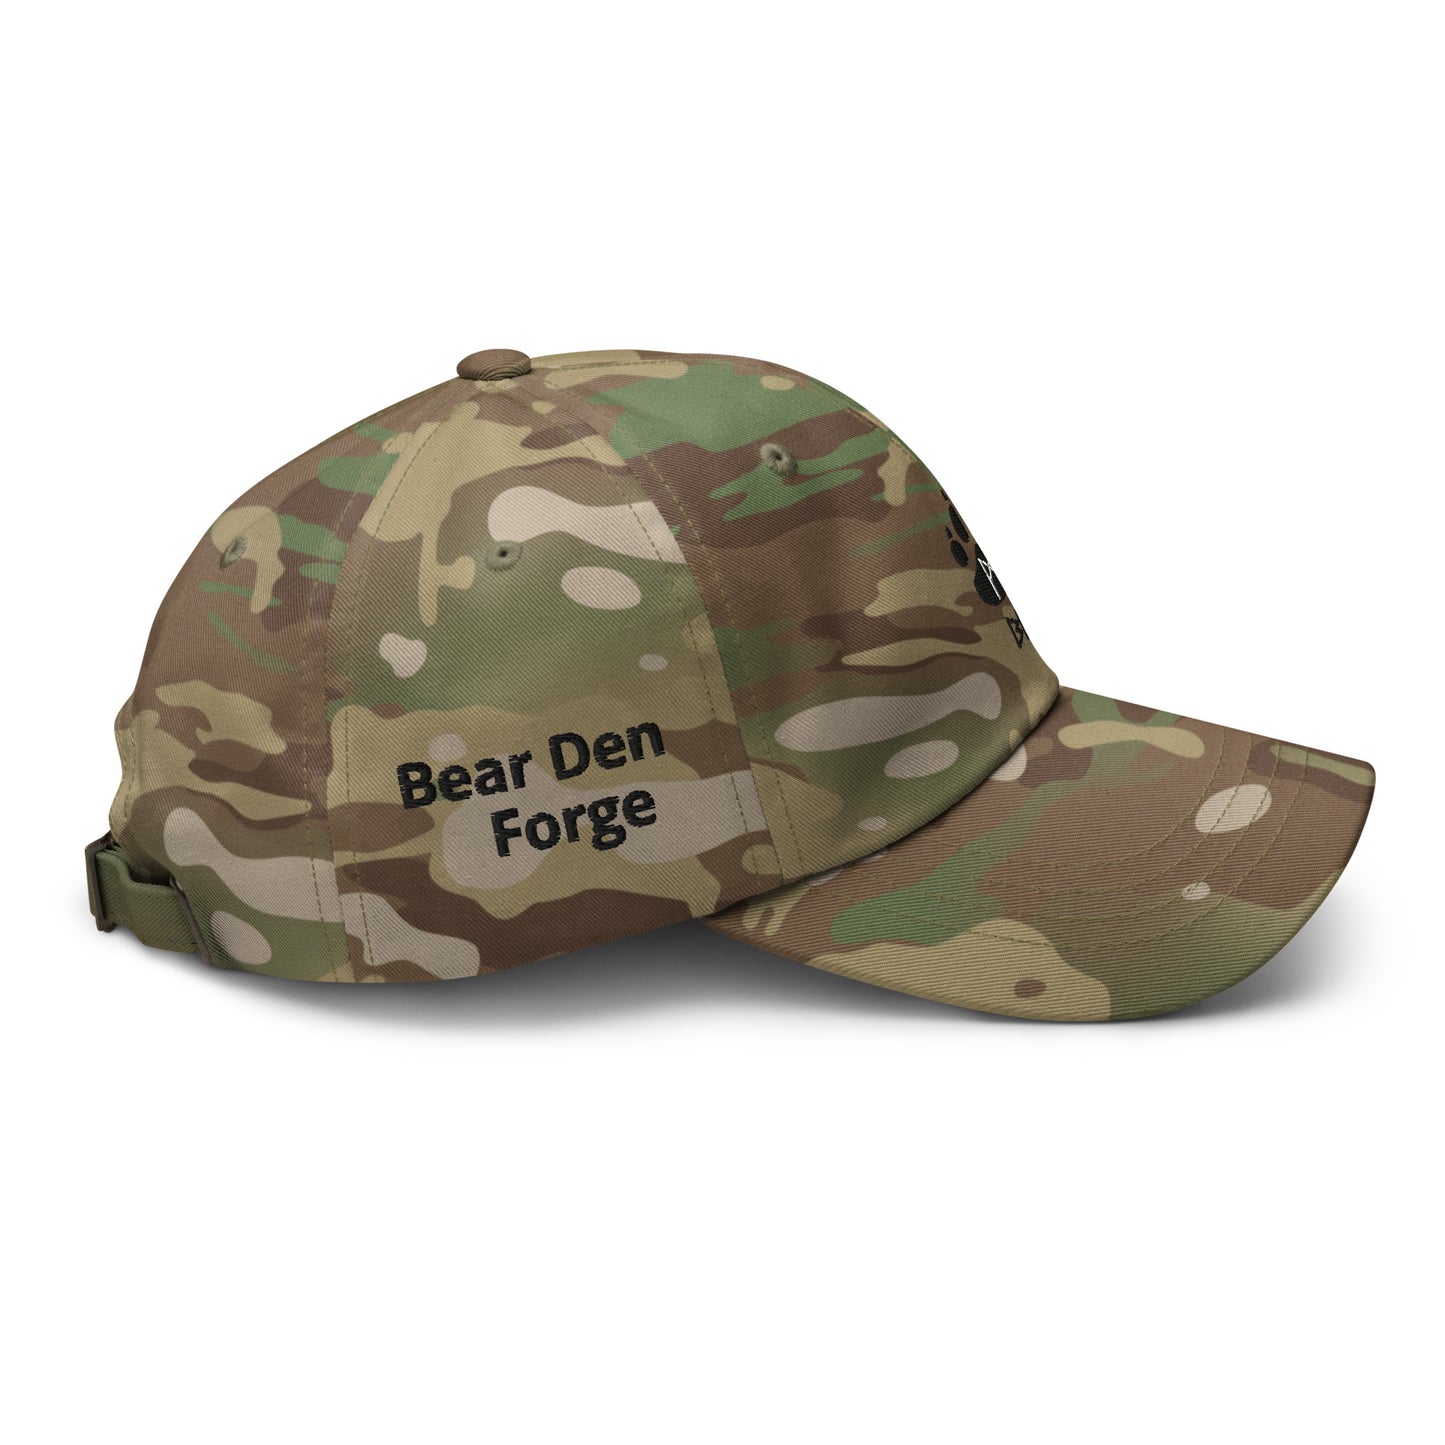 Bear Den Forge Multicam dad hat